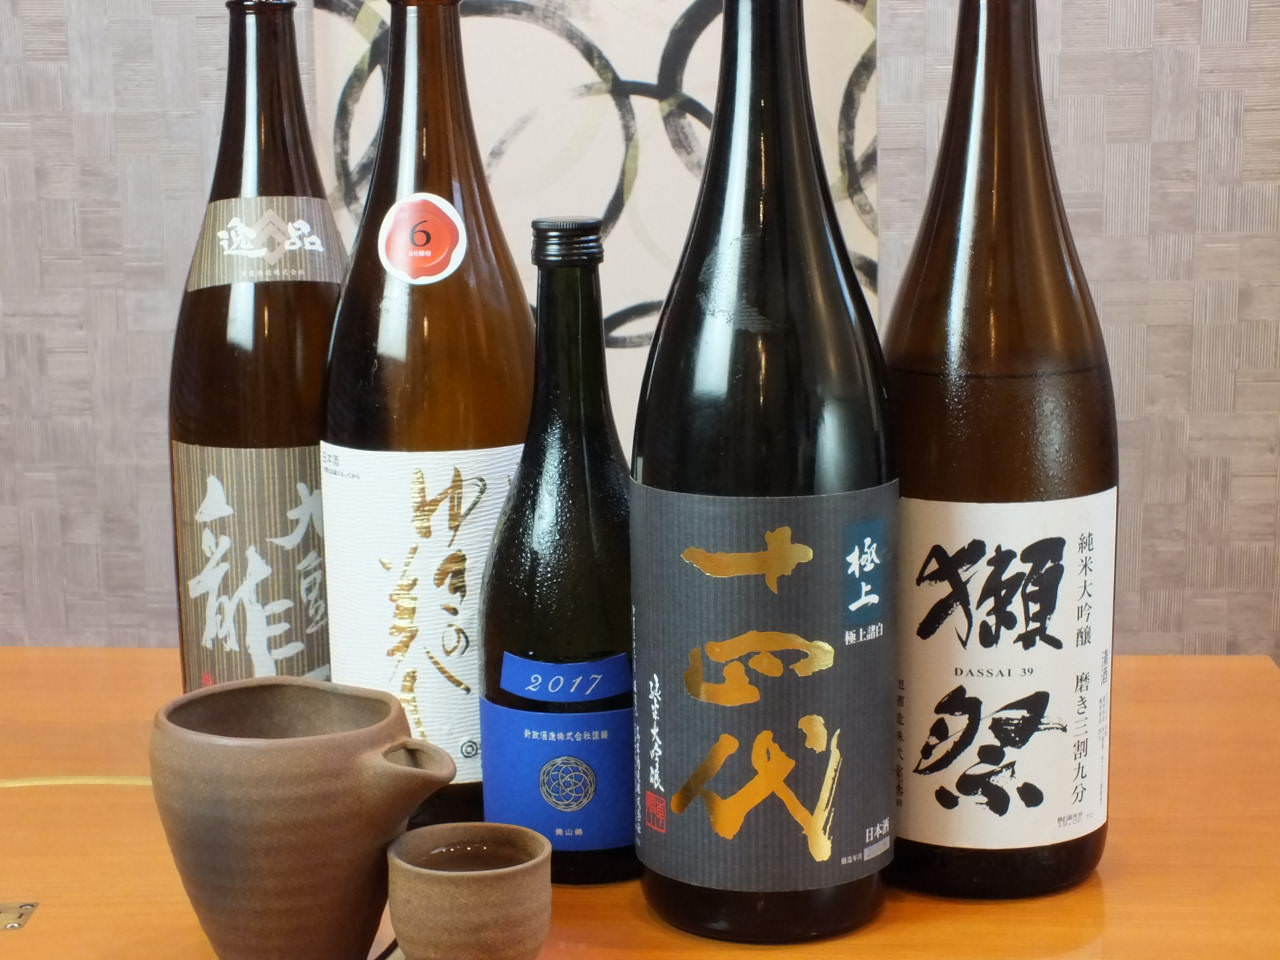 各地域の厳選日本酒をご用意しております。